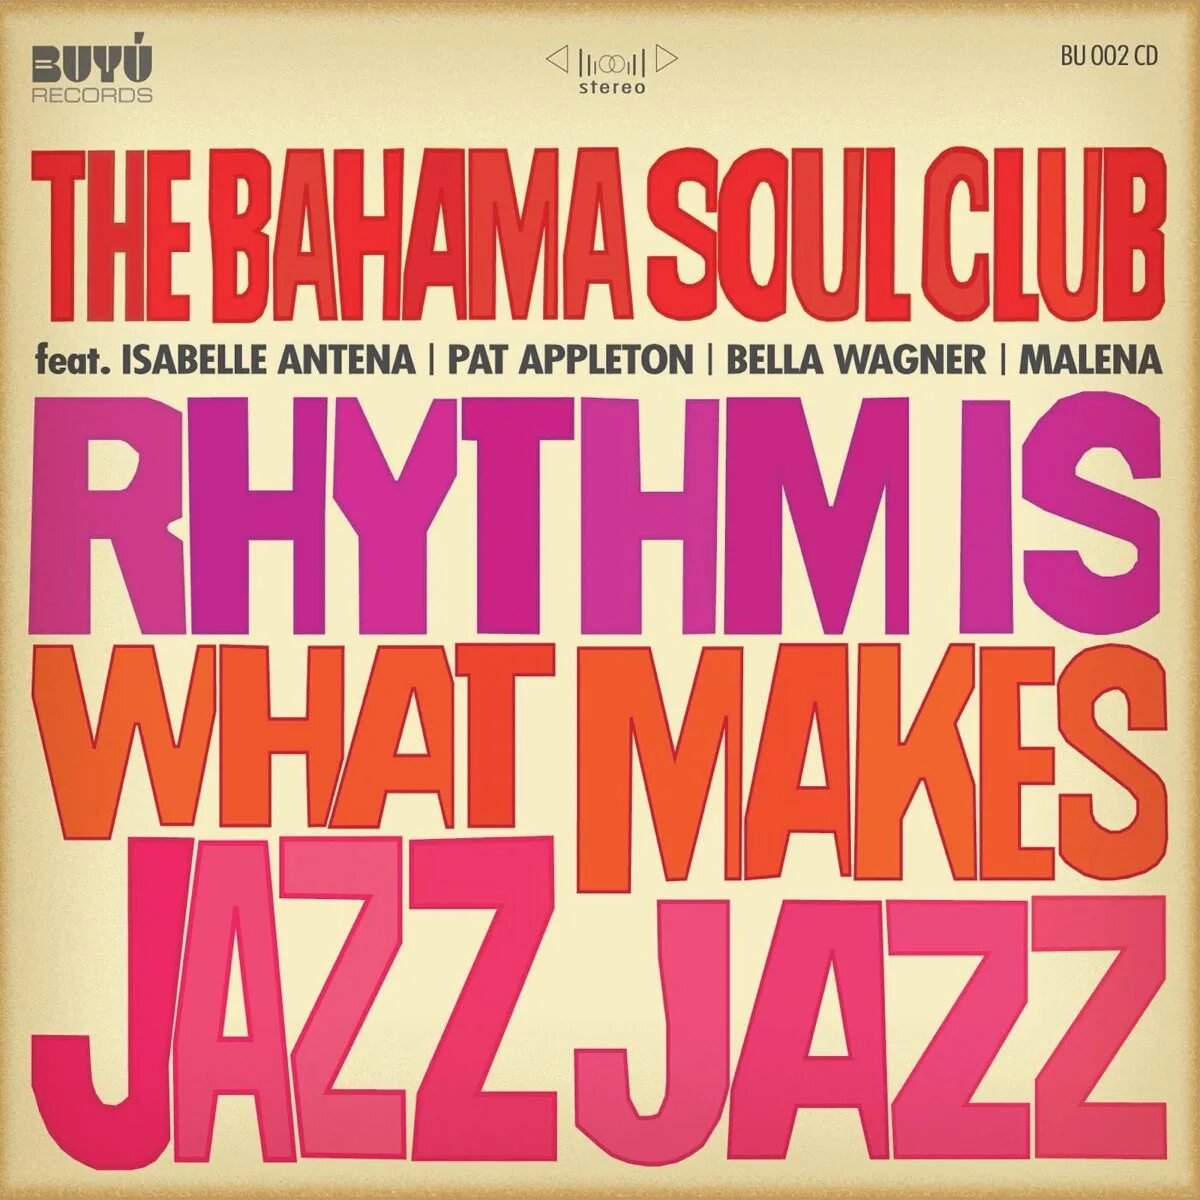 Bahama Soul Club. Bahama Soul Club-2008, Rhythm is what makes Jazz Jazz. What is Rhythm. Rhythm Club.